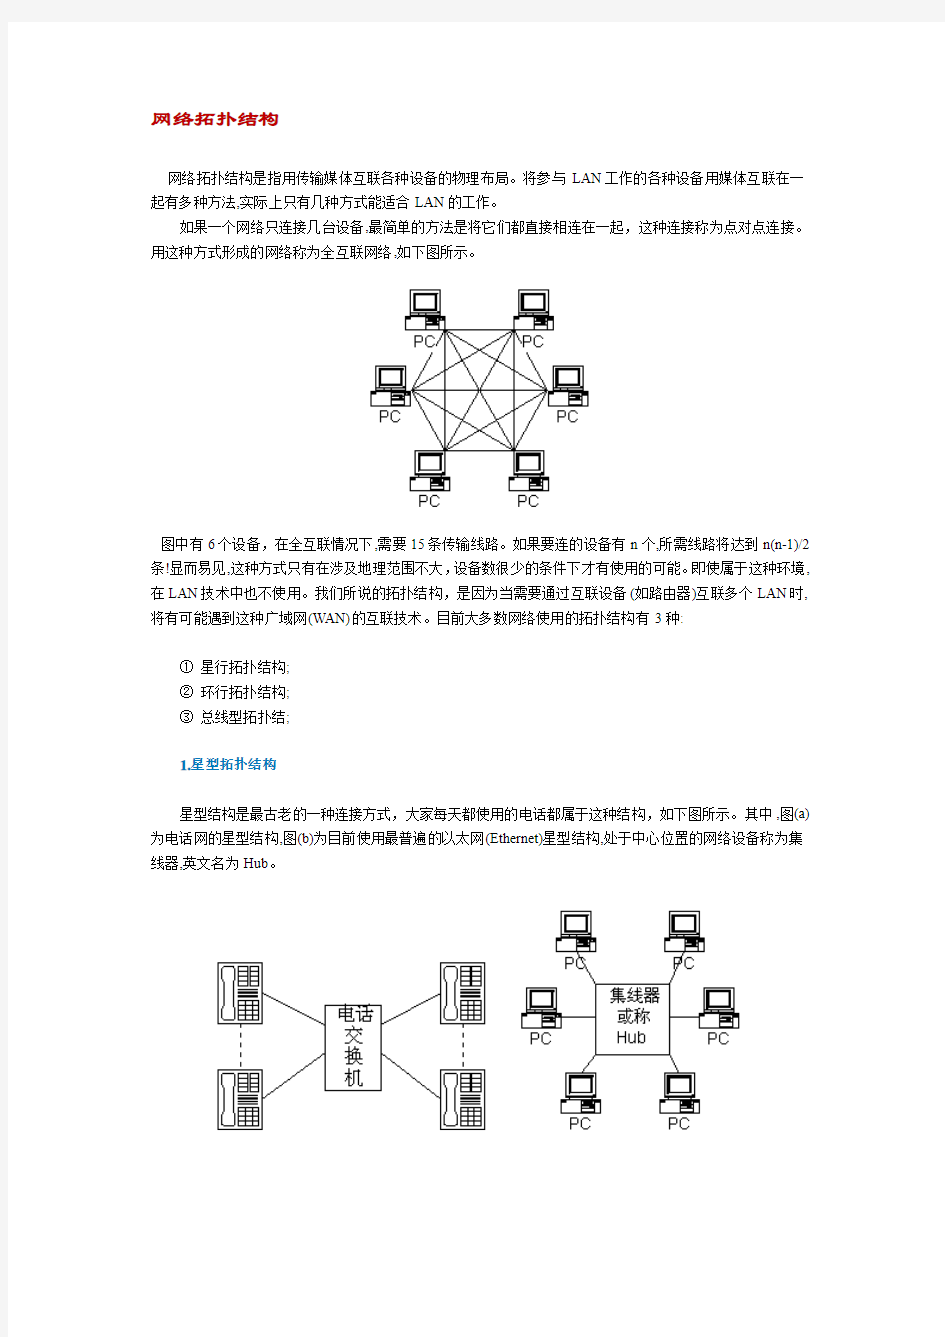 网络系统拓扑结构图